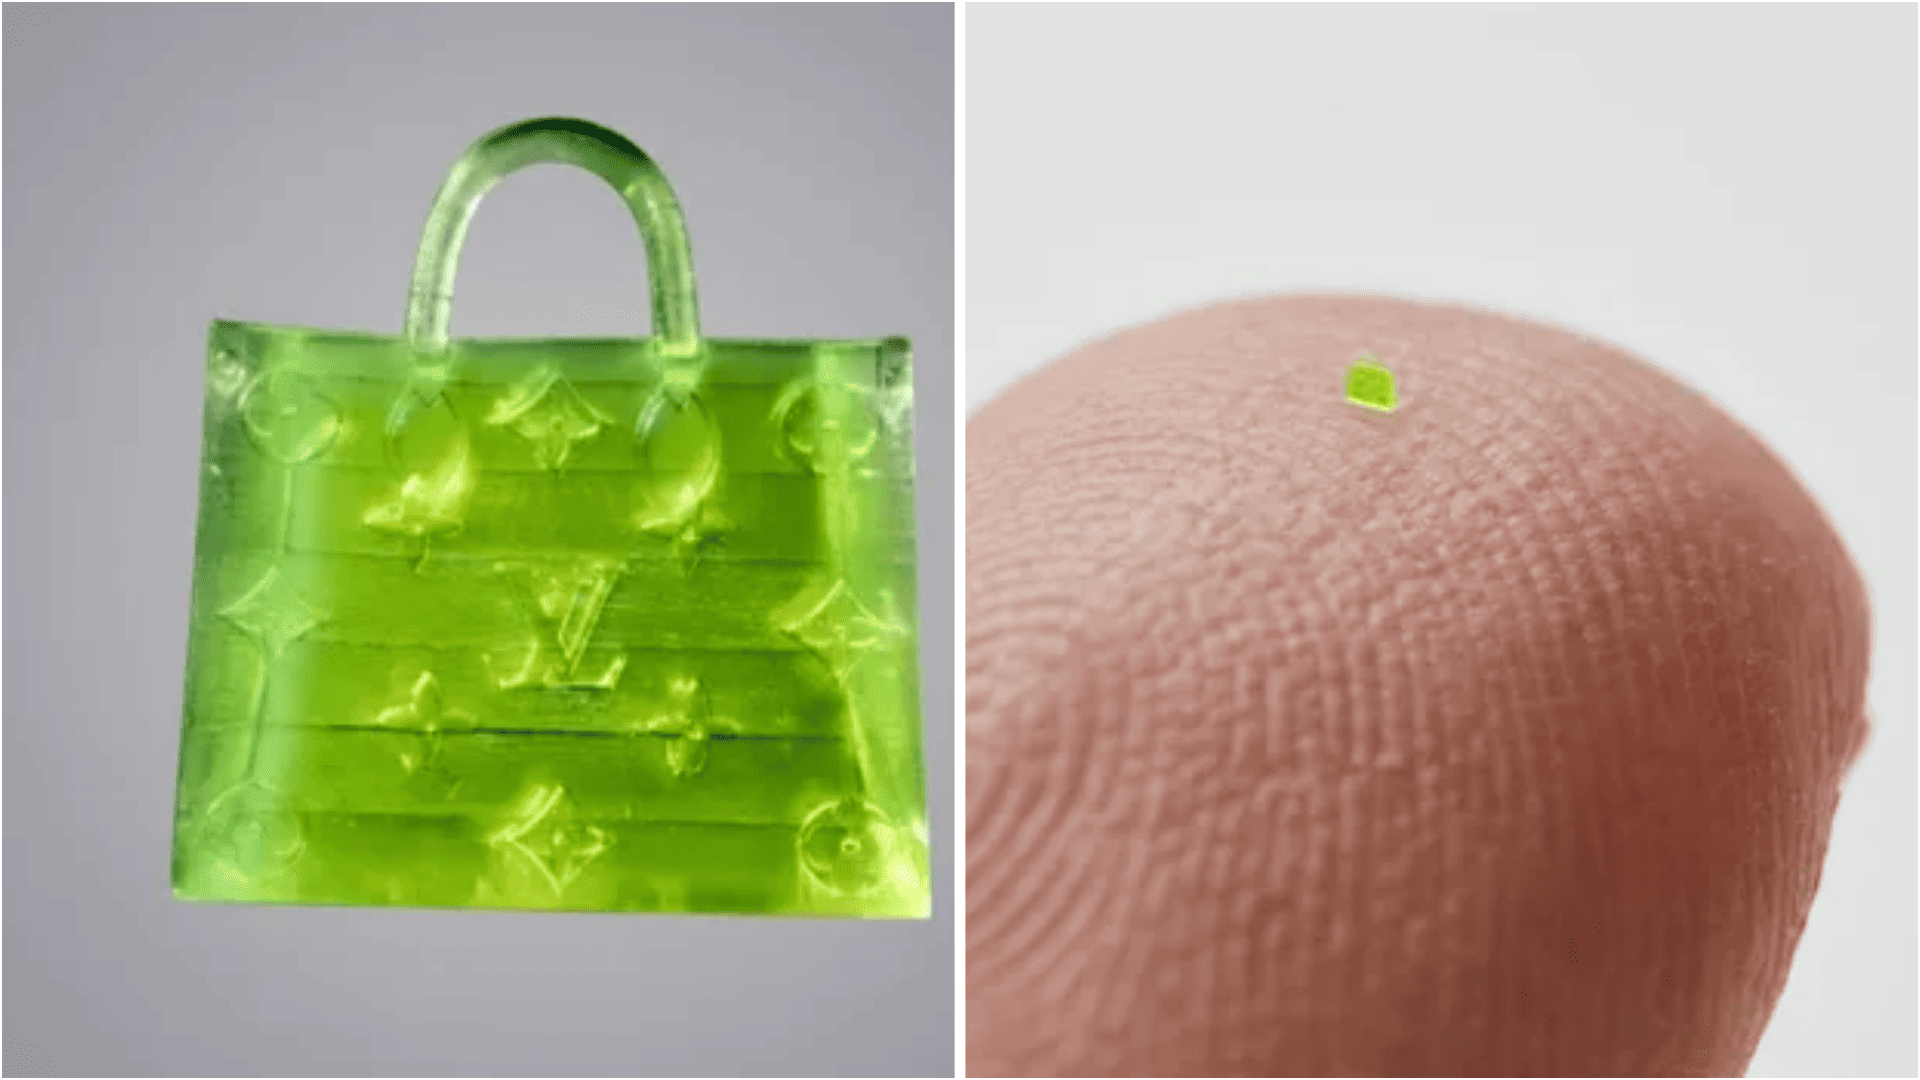 Microscopic Handbag' reportedly 'smaller than a grain of sea salt